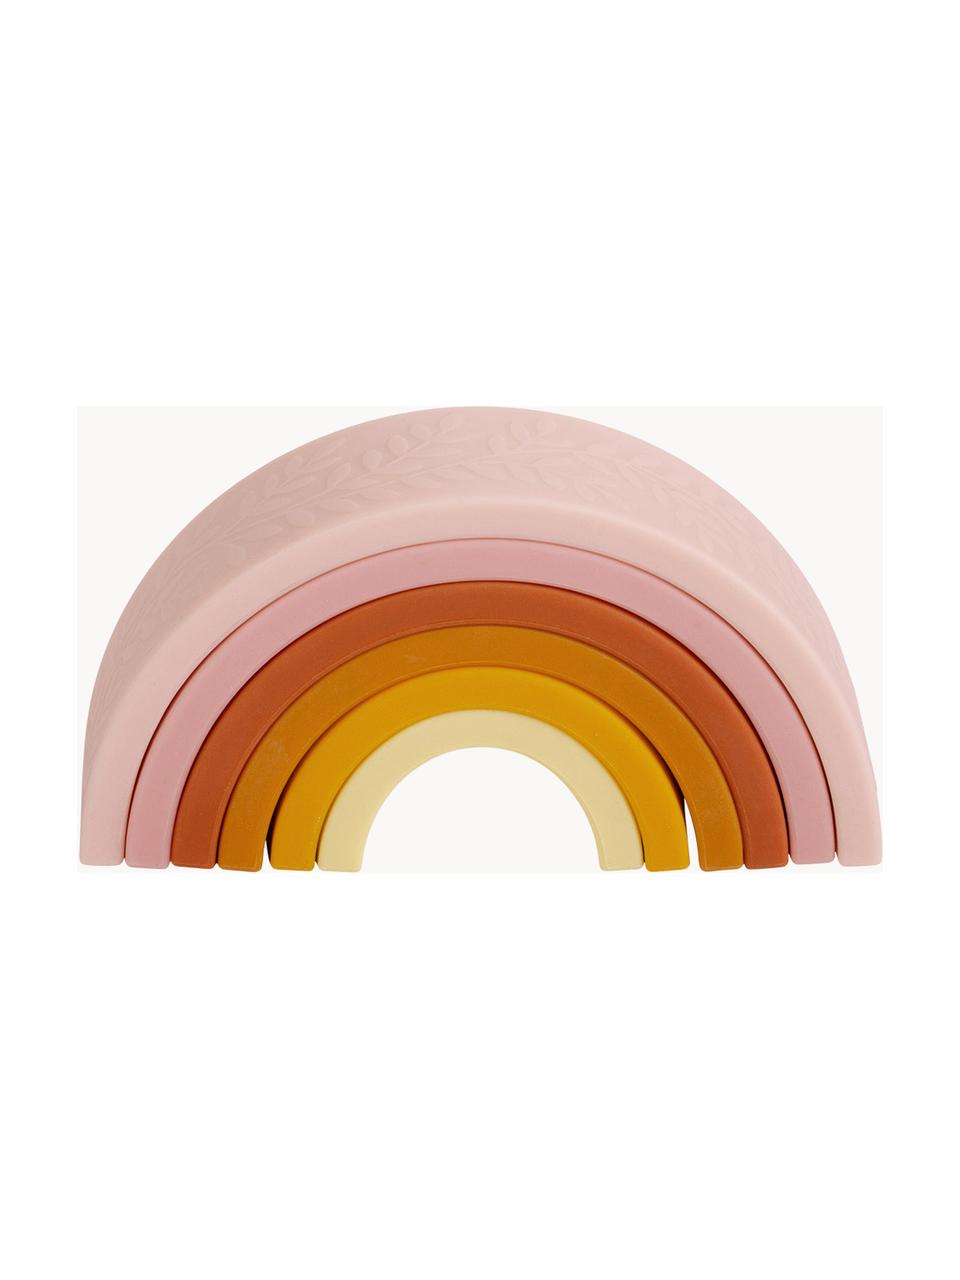 Zabawka do układania Rainbow, Silikon, Odcienie różowego, odcienie żółtego, odcienie pomarańczowego, S 15 cm x W 7 cm